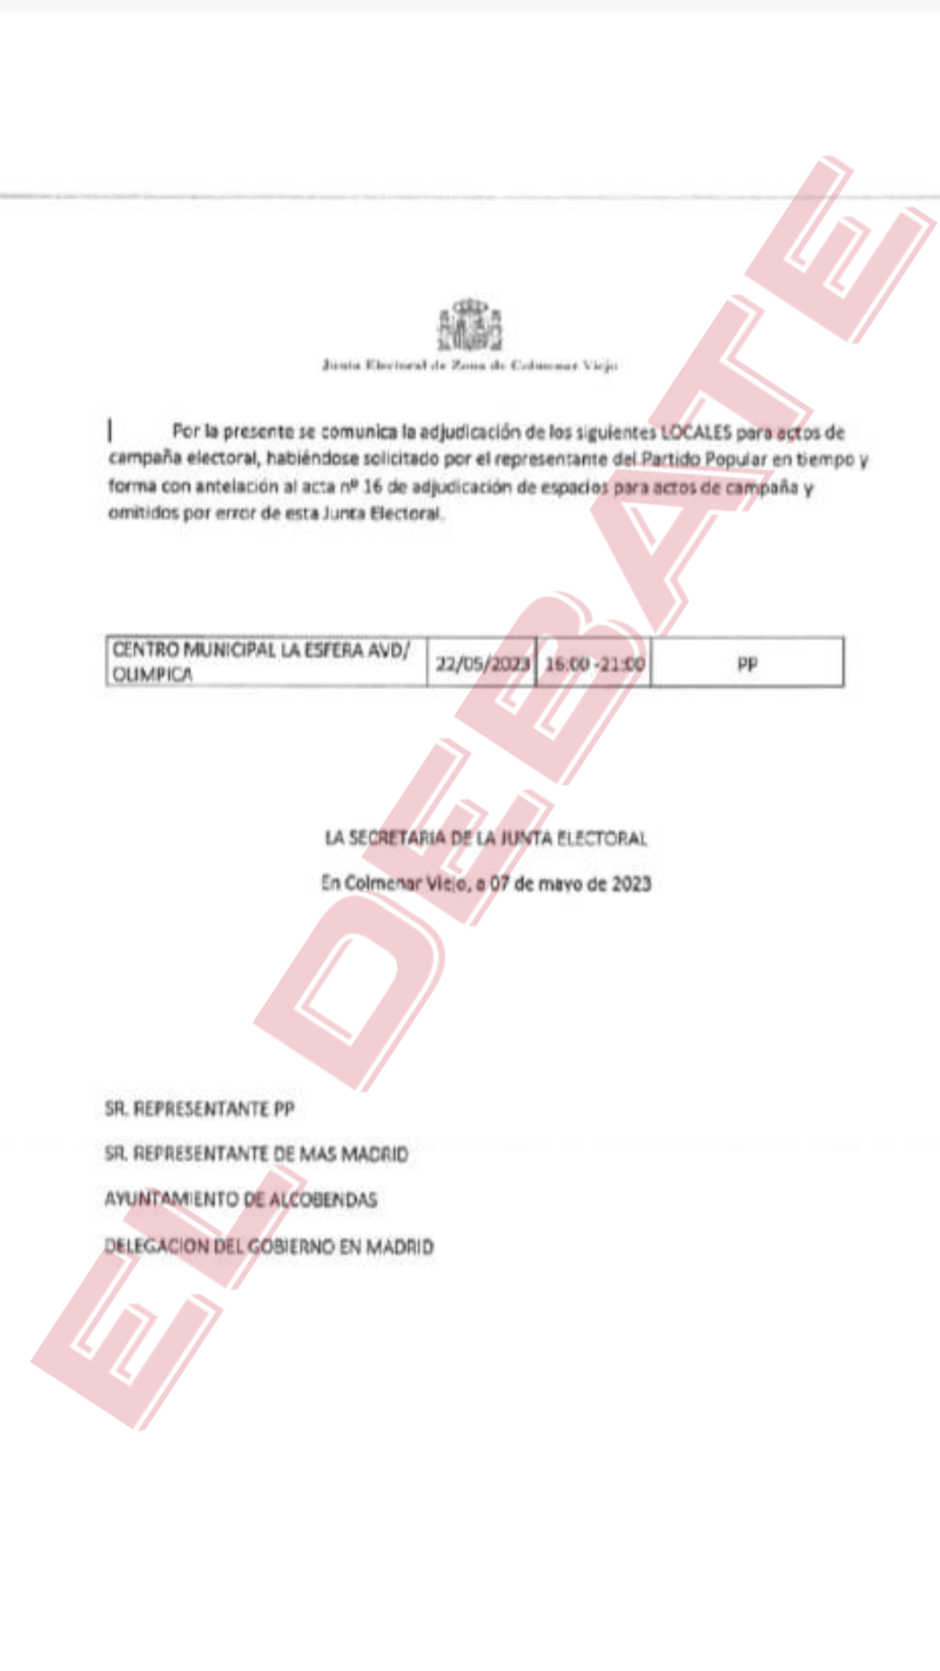 Documento donde la Junta Electoral de Colmenar autoriza al PP a celebrar el acto en el lugar solicitado